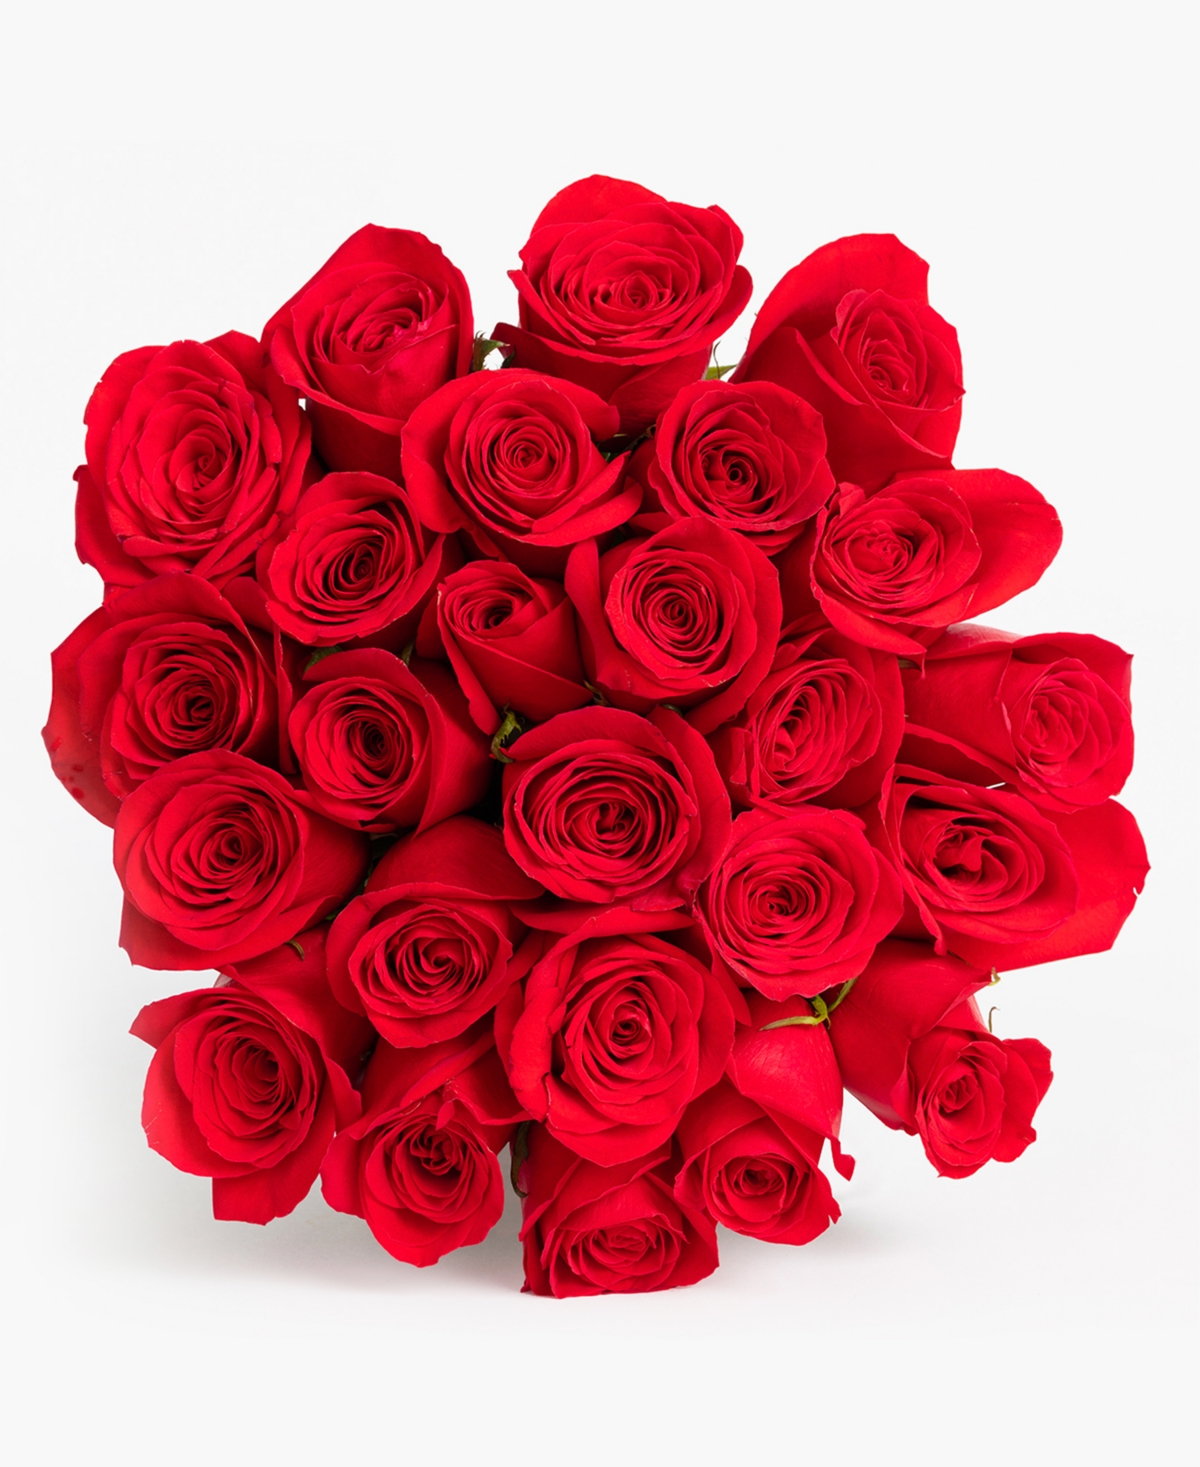 Splendid Red Roses Fresh Flower Bouquet